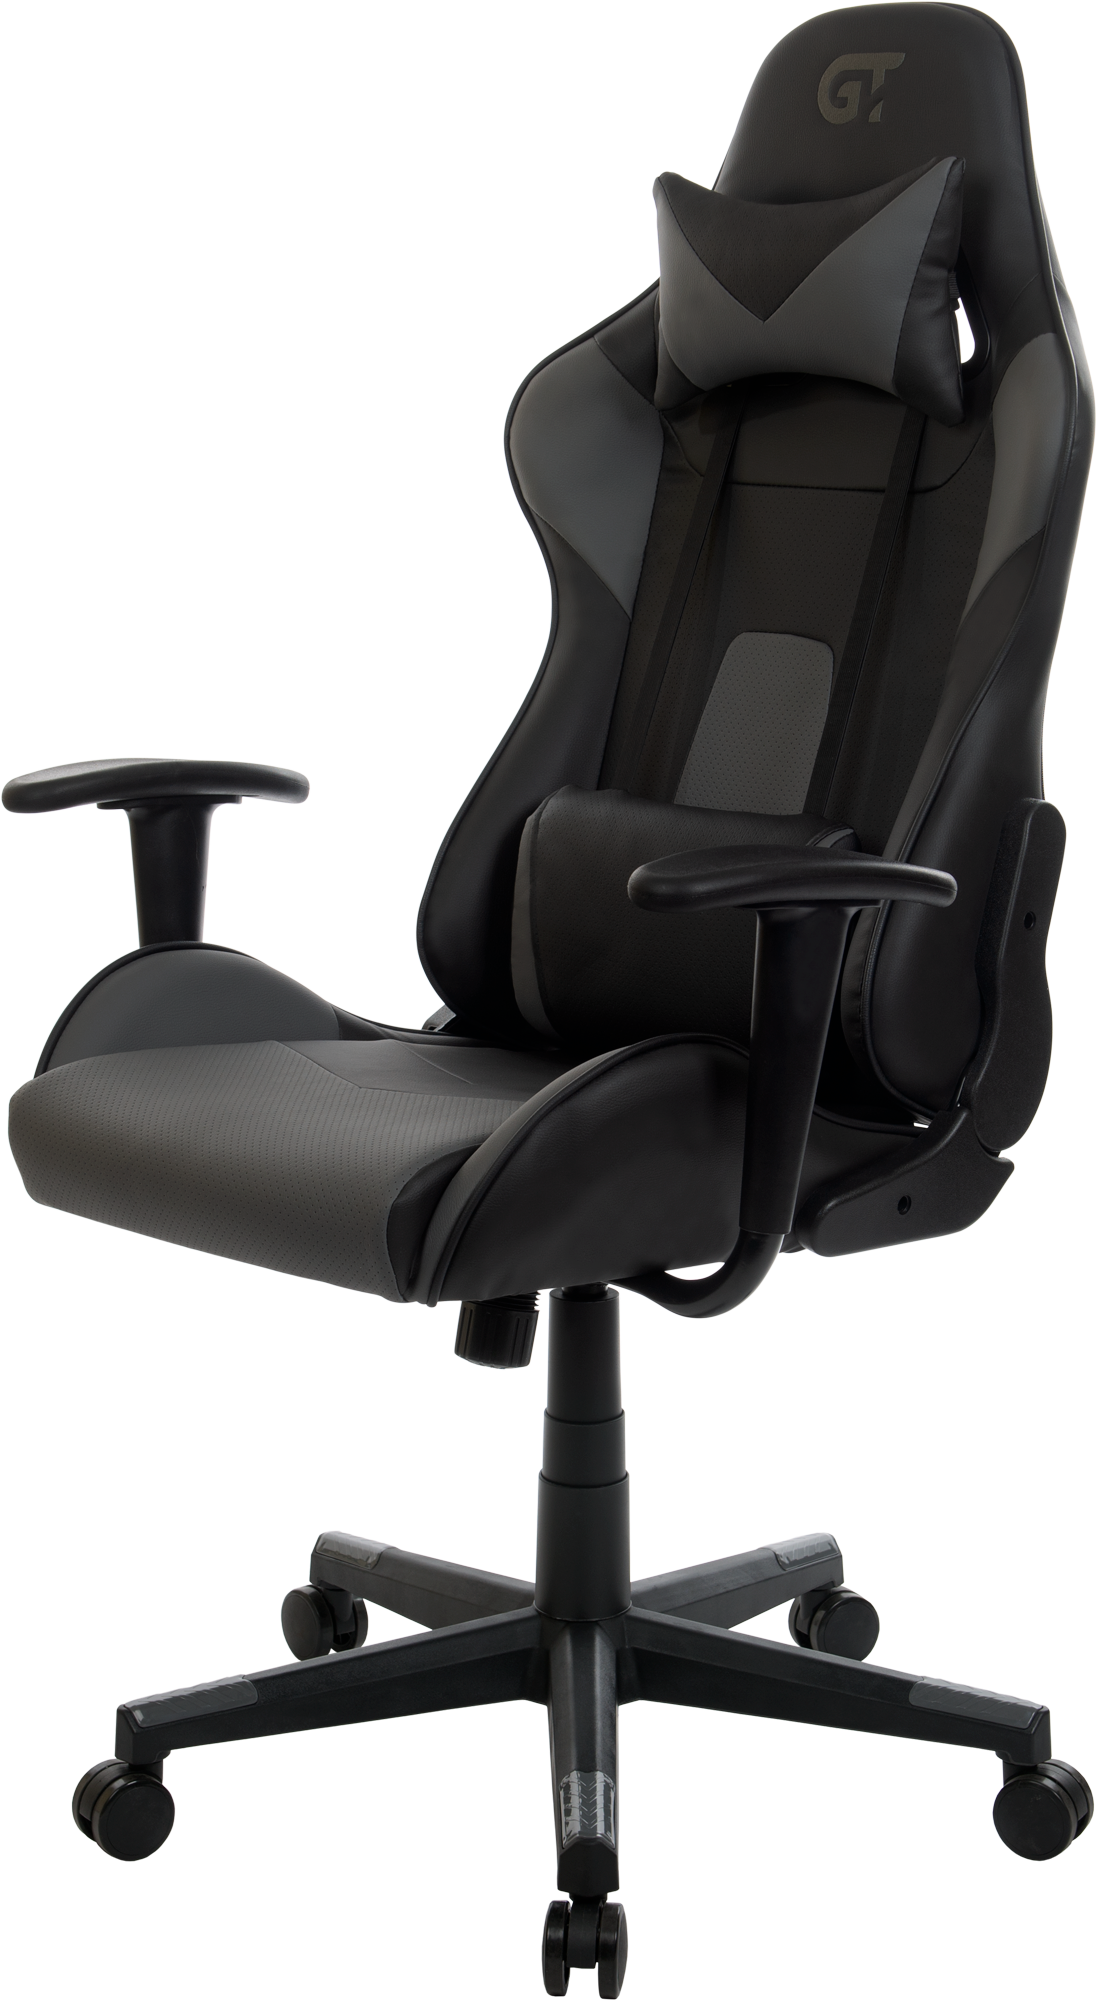 Геймерское кресло GT Racer черное с темно-серым (X-2317 Black/Dark Gray) - фото 7